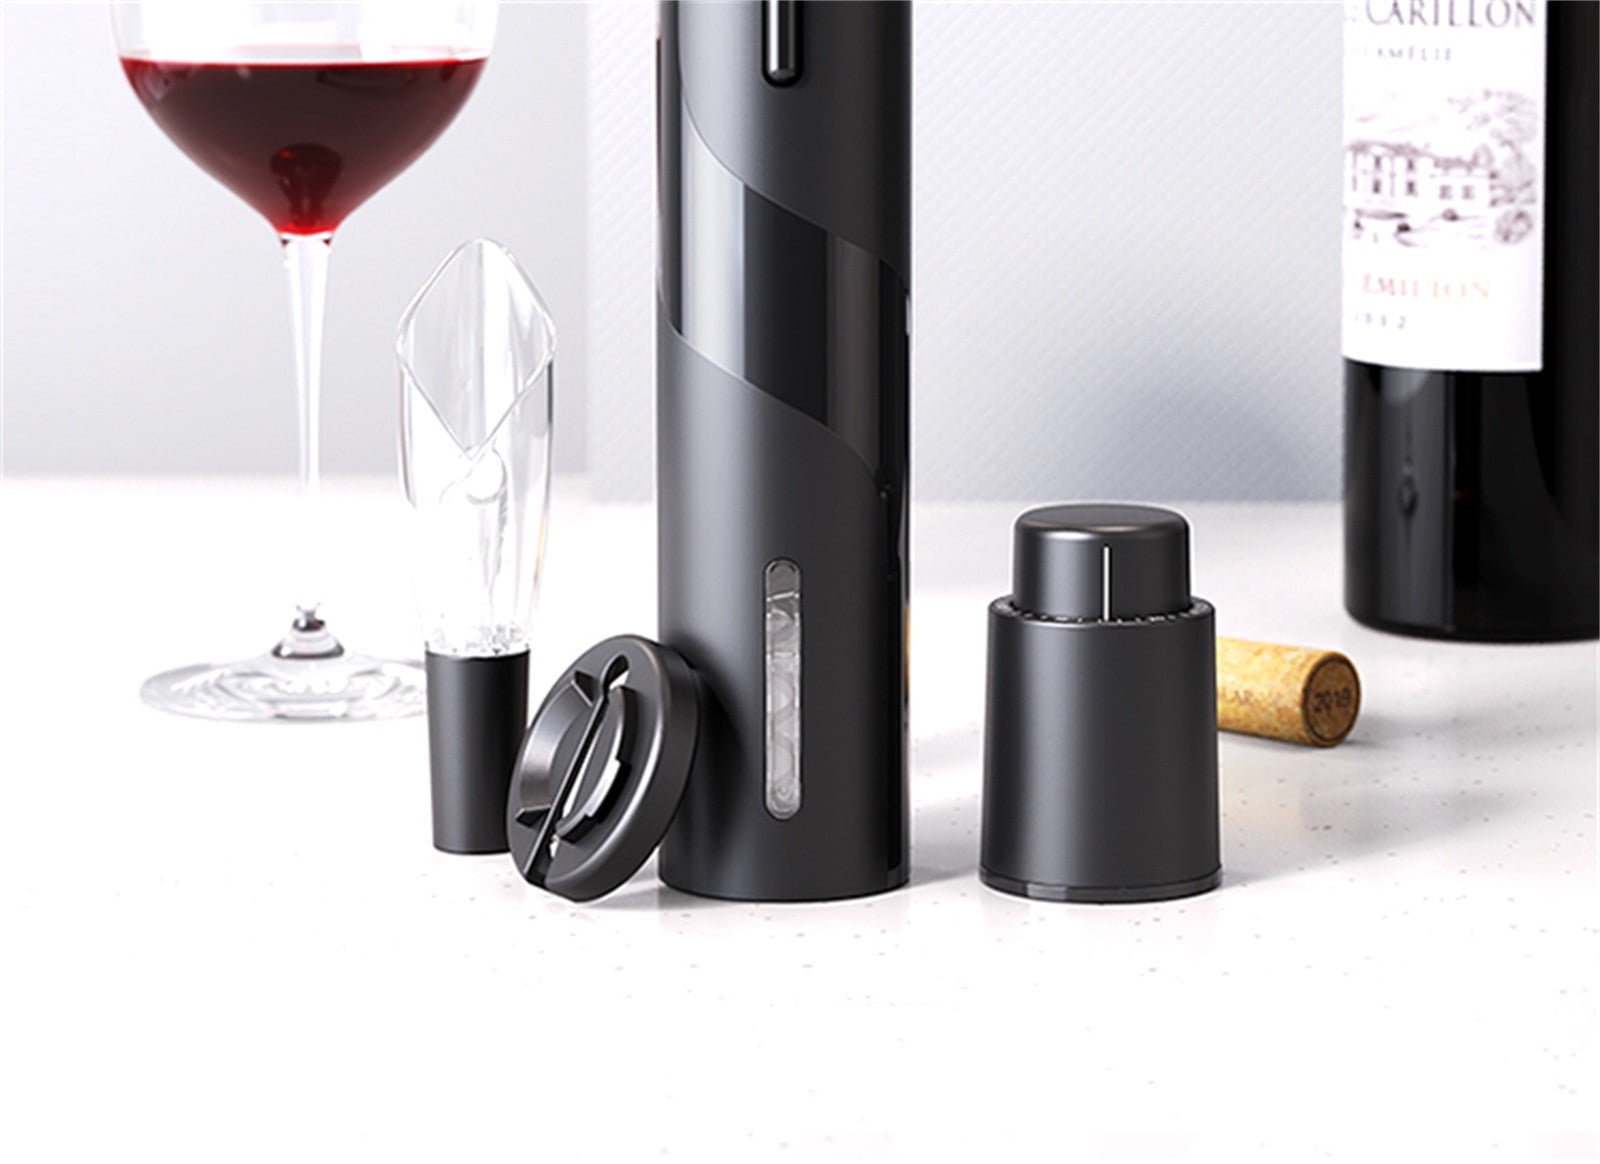 Automatic Electric Wine Bottle Corkscrew Black - PKAWAY